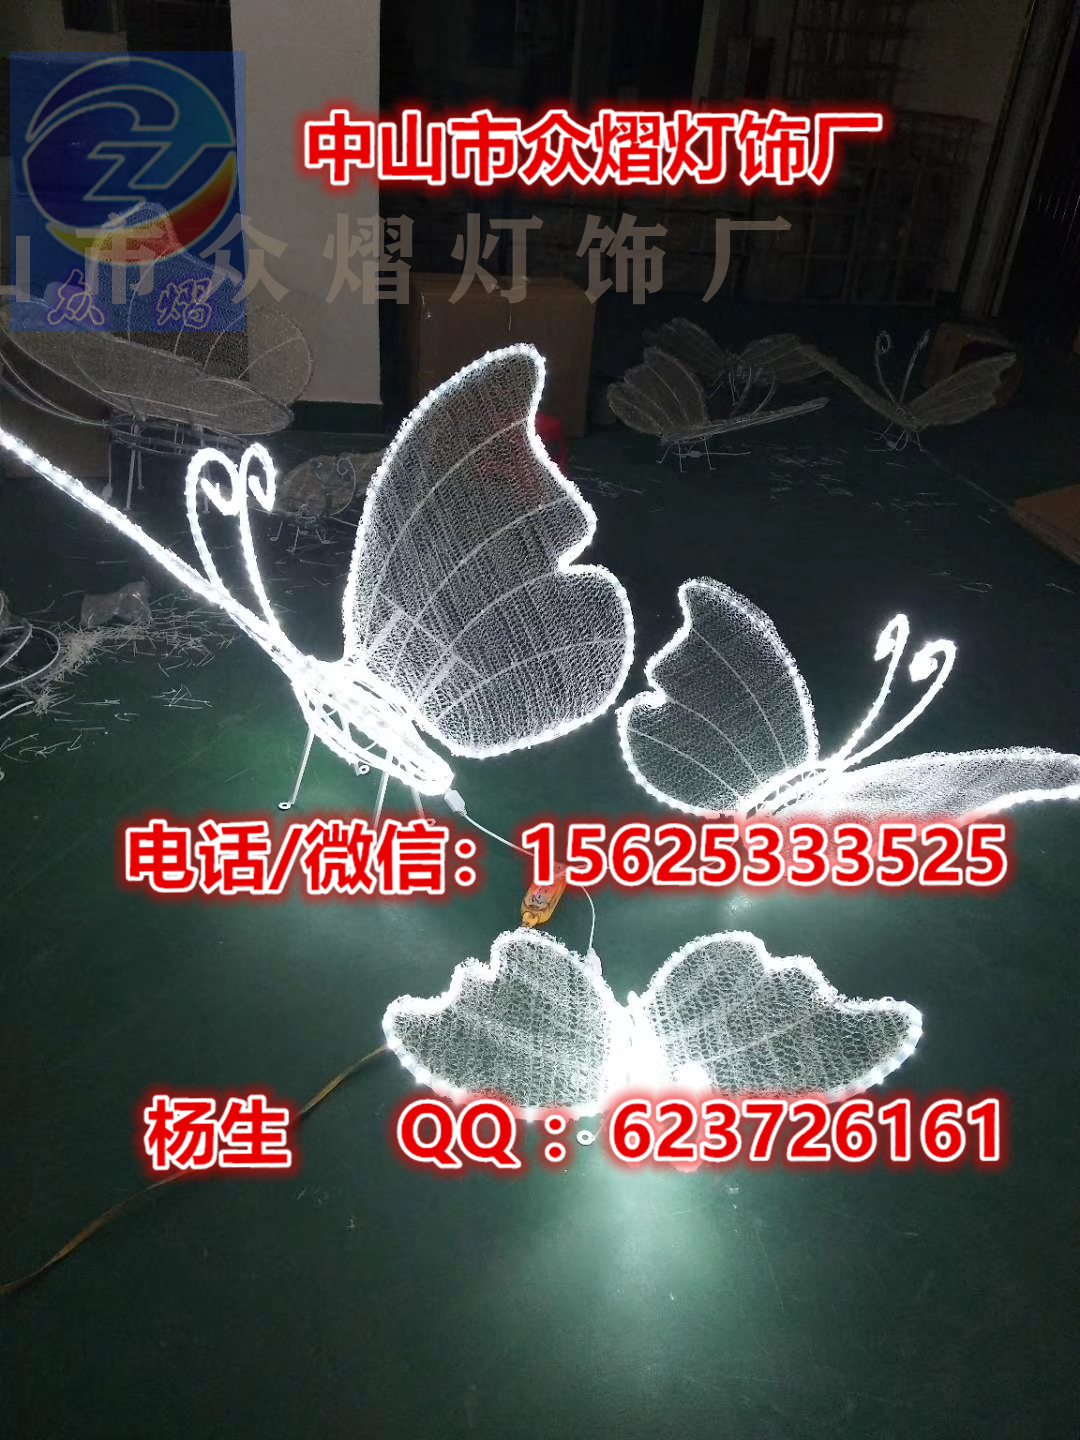 圣诞老人造型灯 企鹅彩灯 仙鹤造型灯 海草造型灯 珊瑚造型灯图片